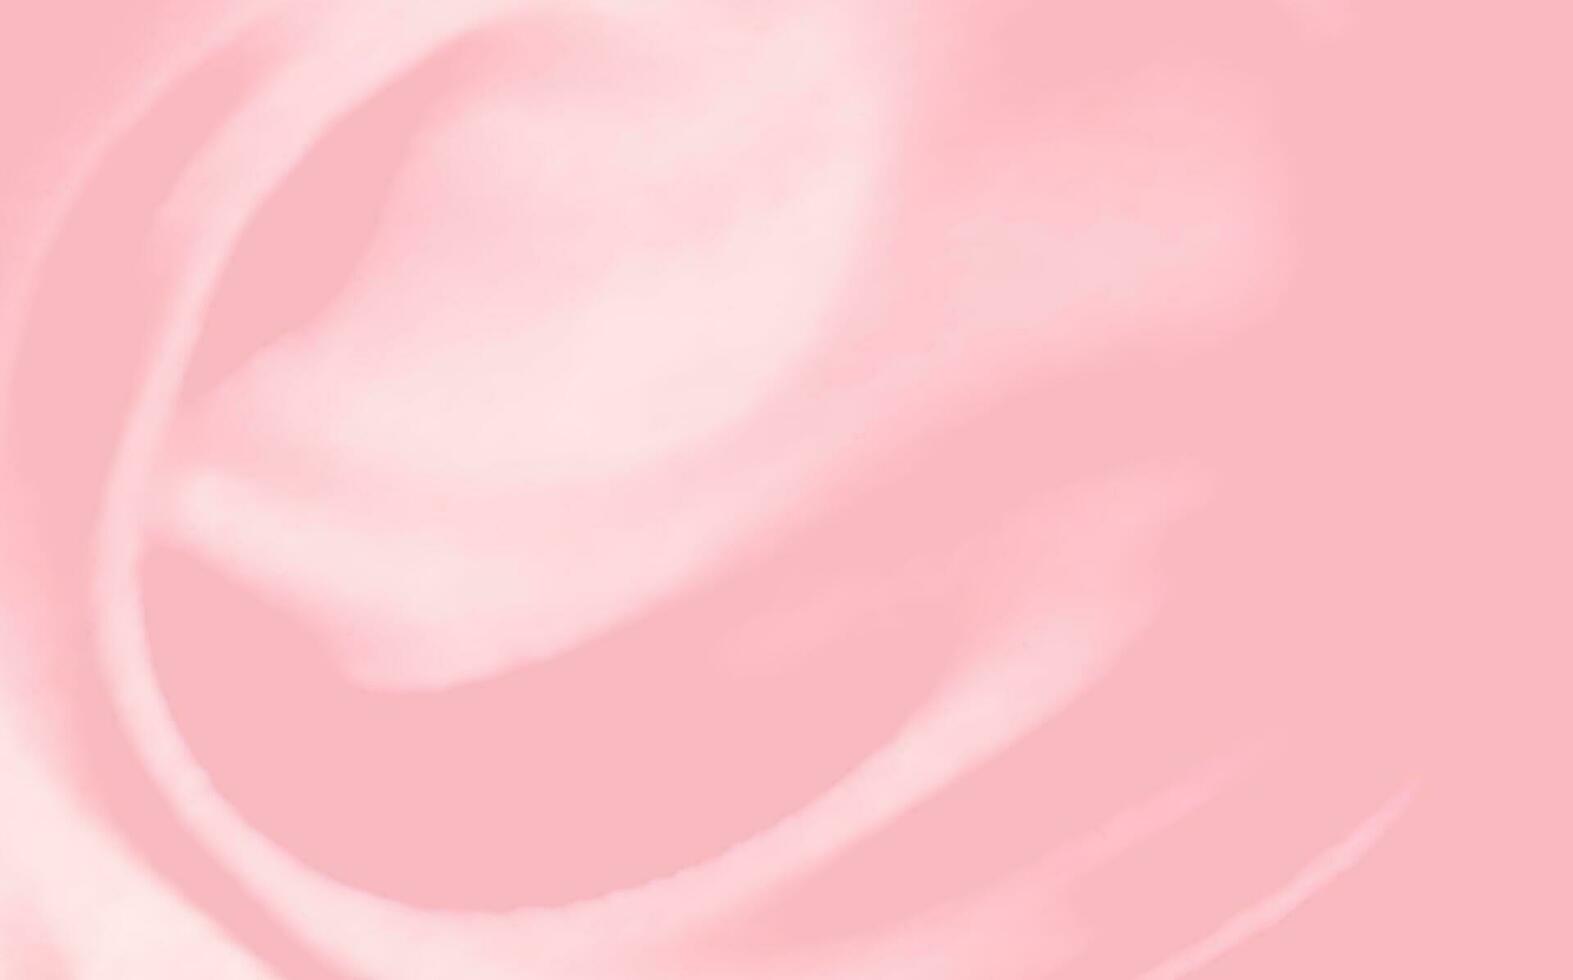 rose diffusion texture de crème, la glace crème ou glaçage. lumière Contexte de fraise dessert, gelée ou confiserie crème. vecteur